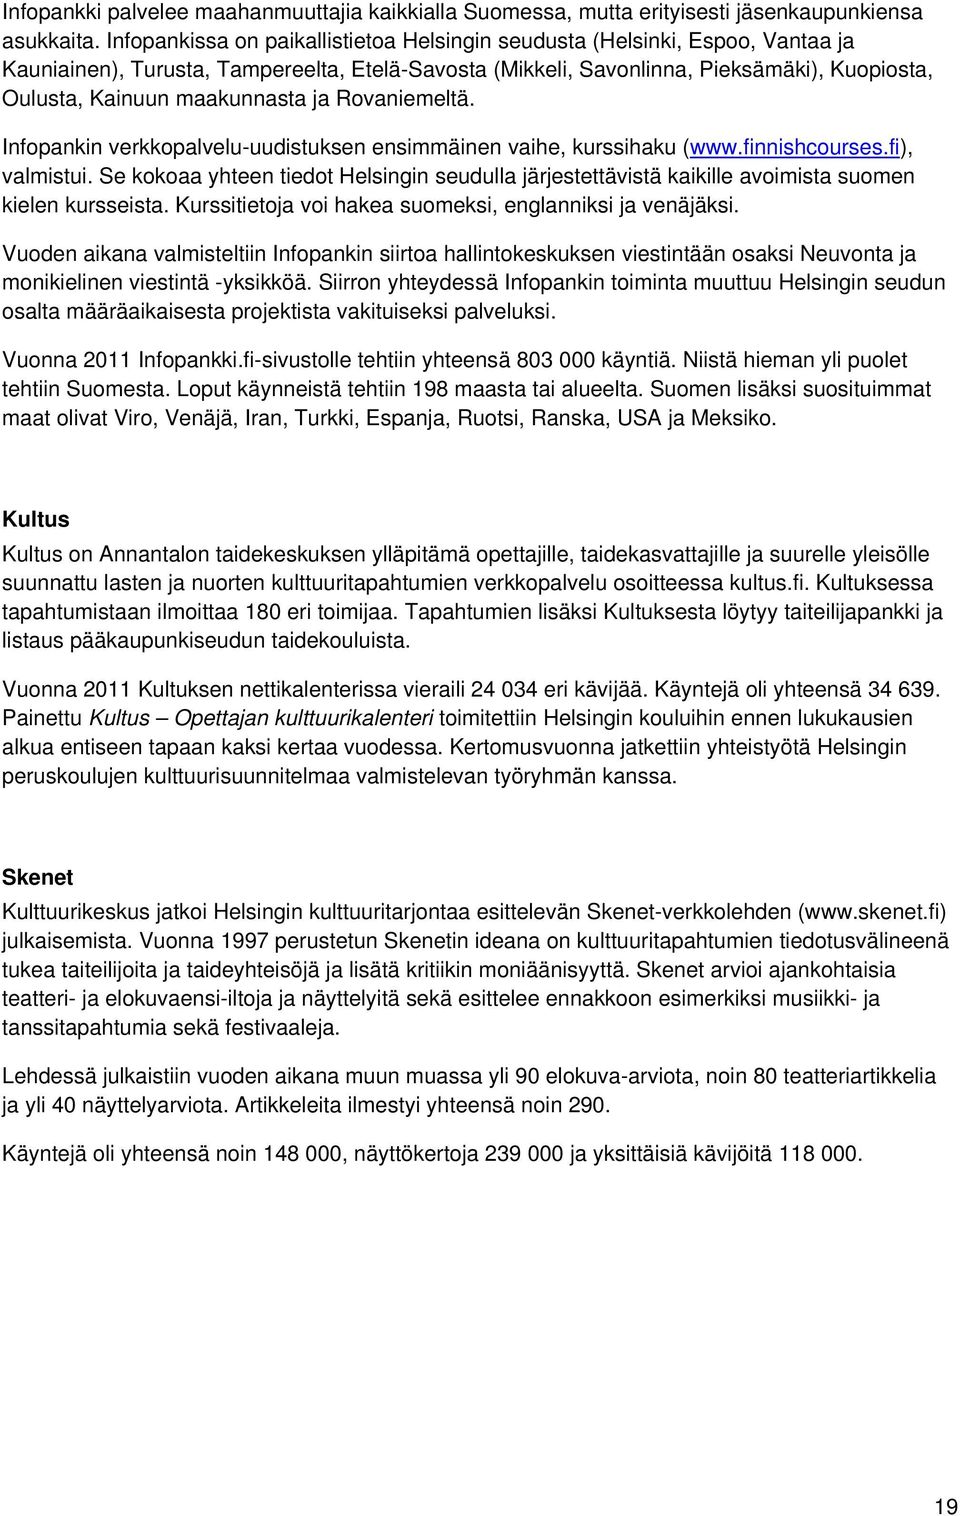 maakunnasta ja Rovaniemeltä. Infopankin verkkopalvelu-uudistuksen ensimmäinen vaihe, kurssihaku (www.finnishcourses.fi), valmistui.